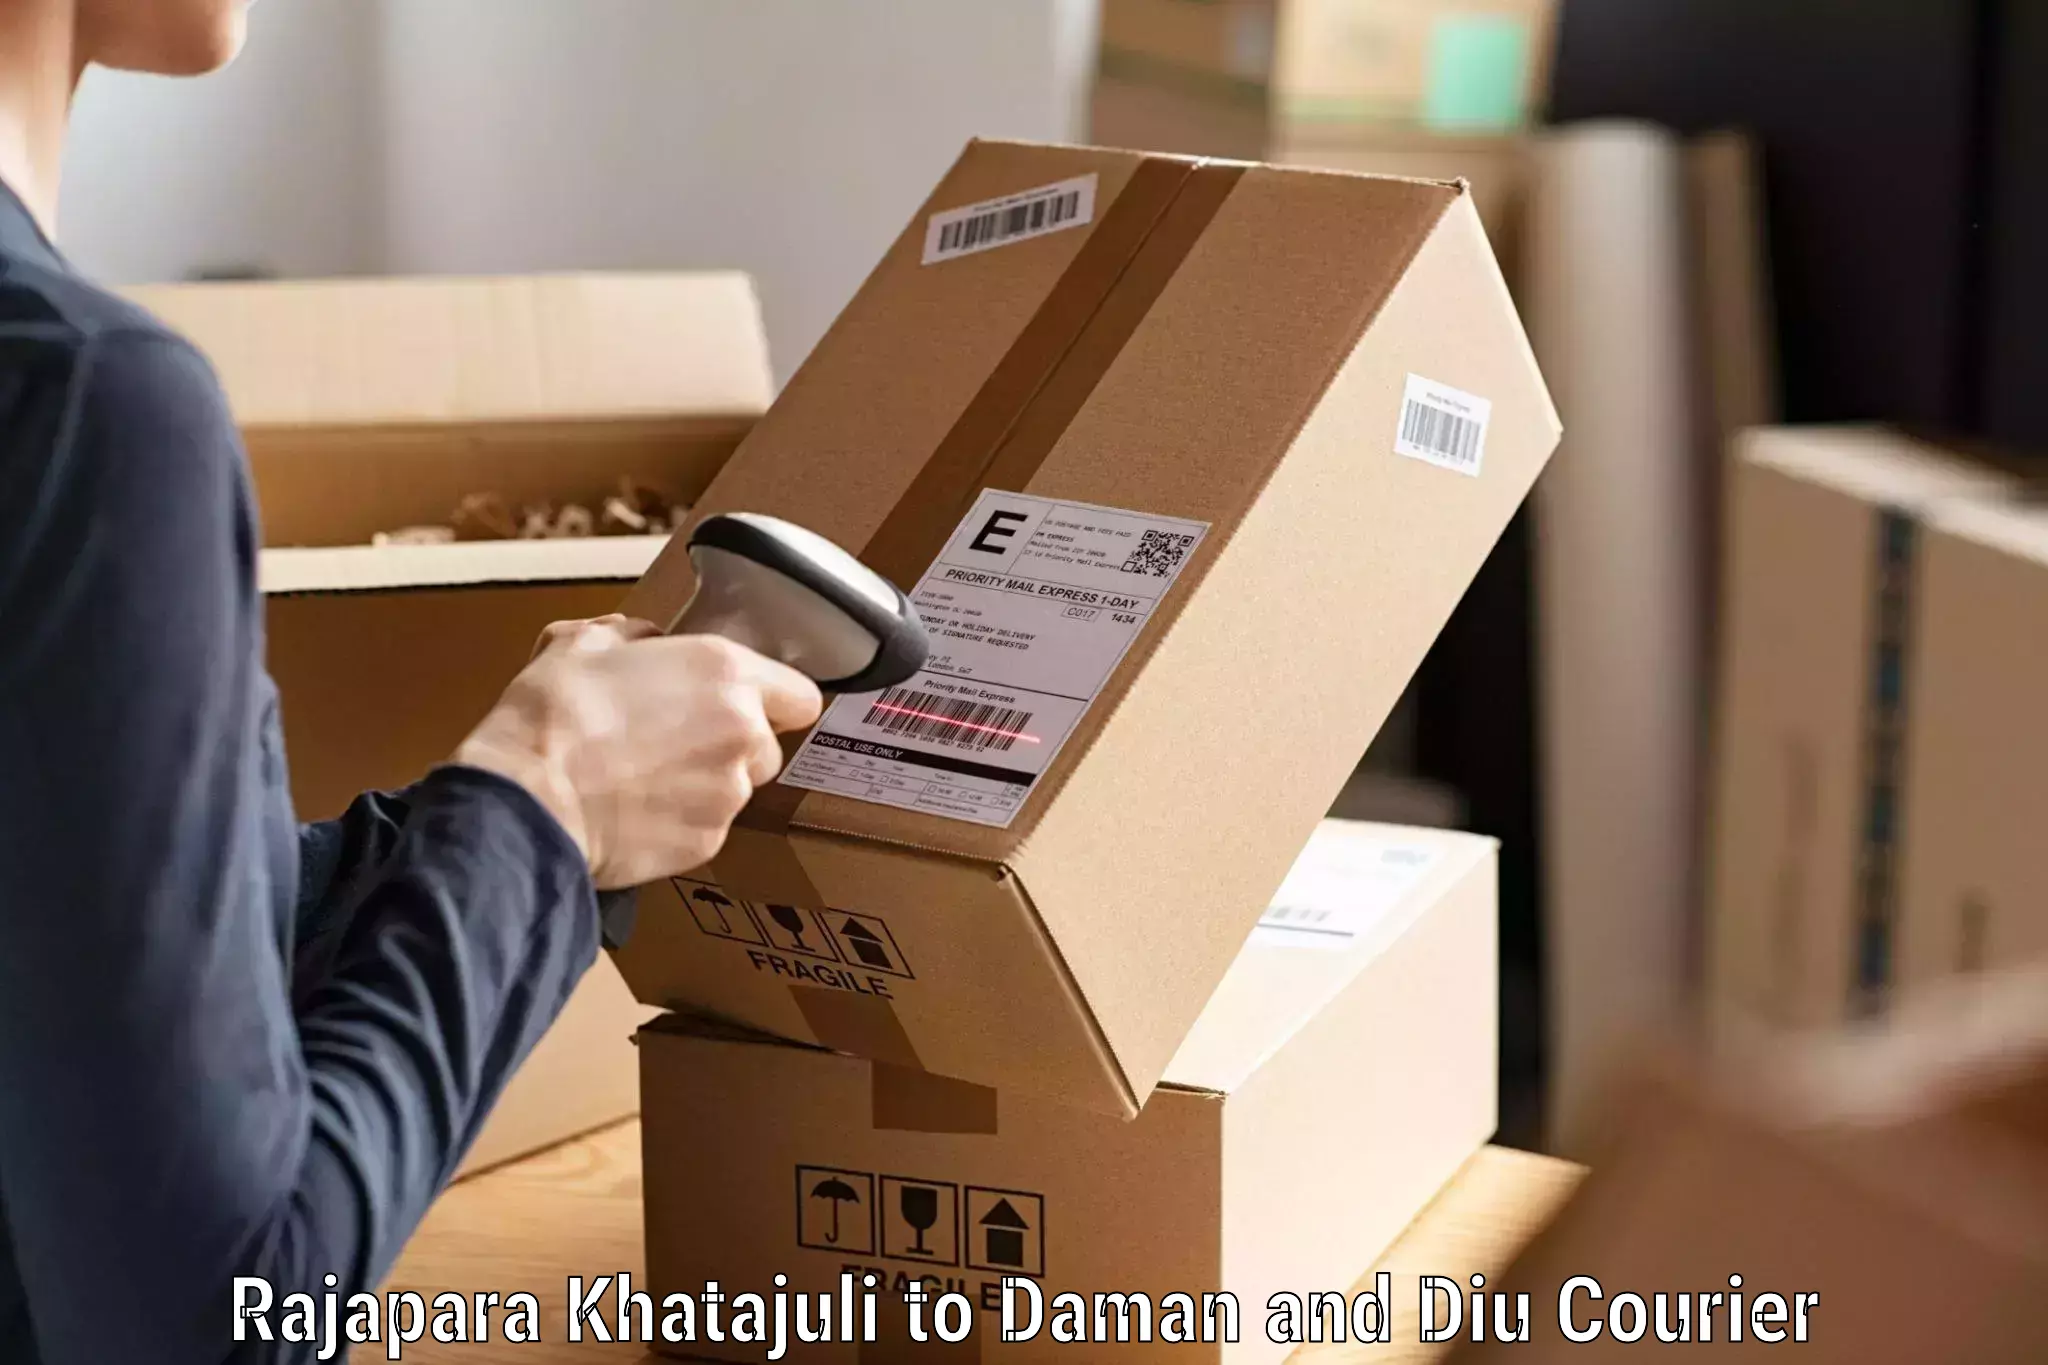 High-performance logistics Rajapara Khatajuli to Daman and Diu